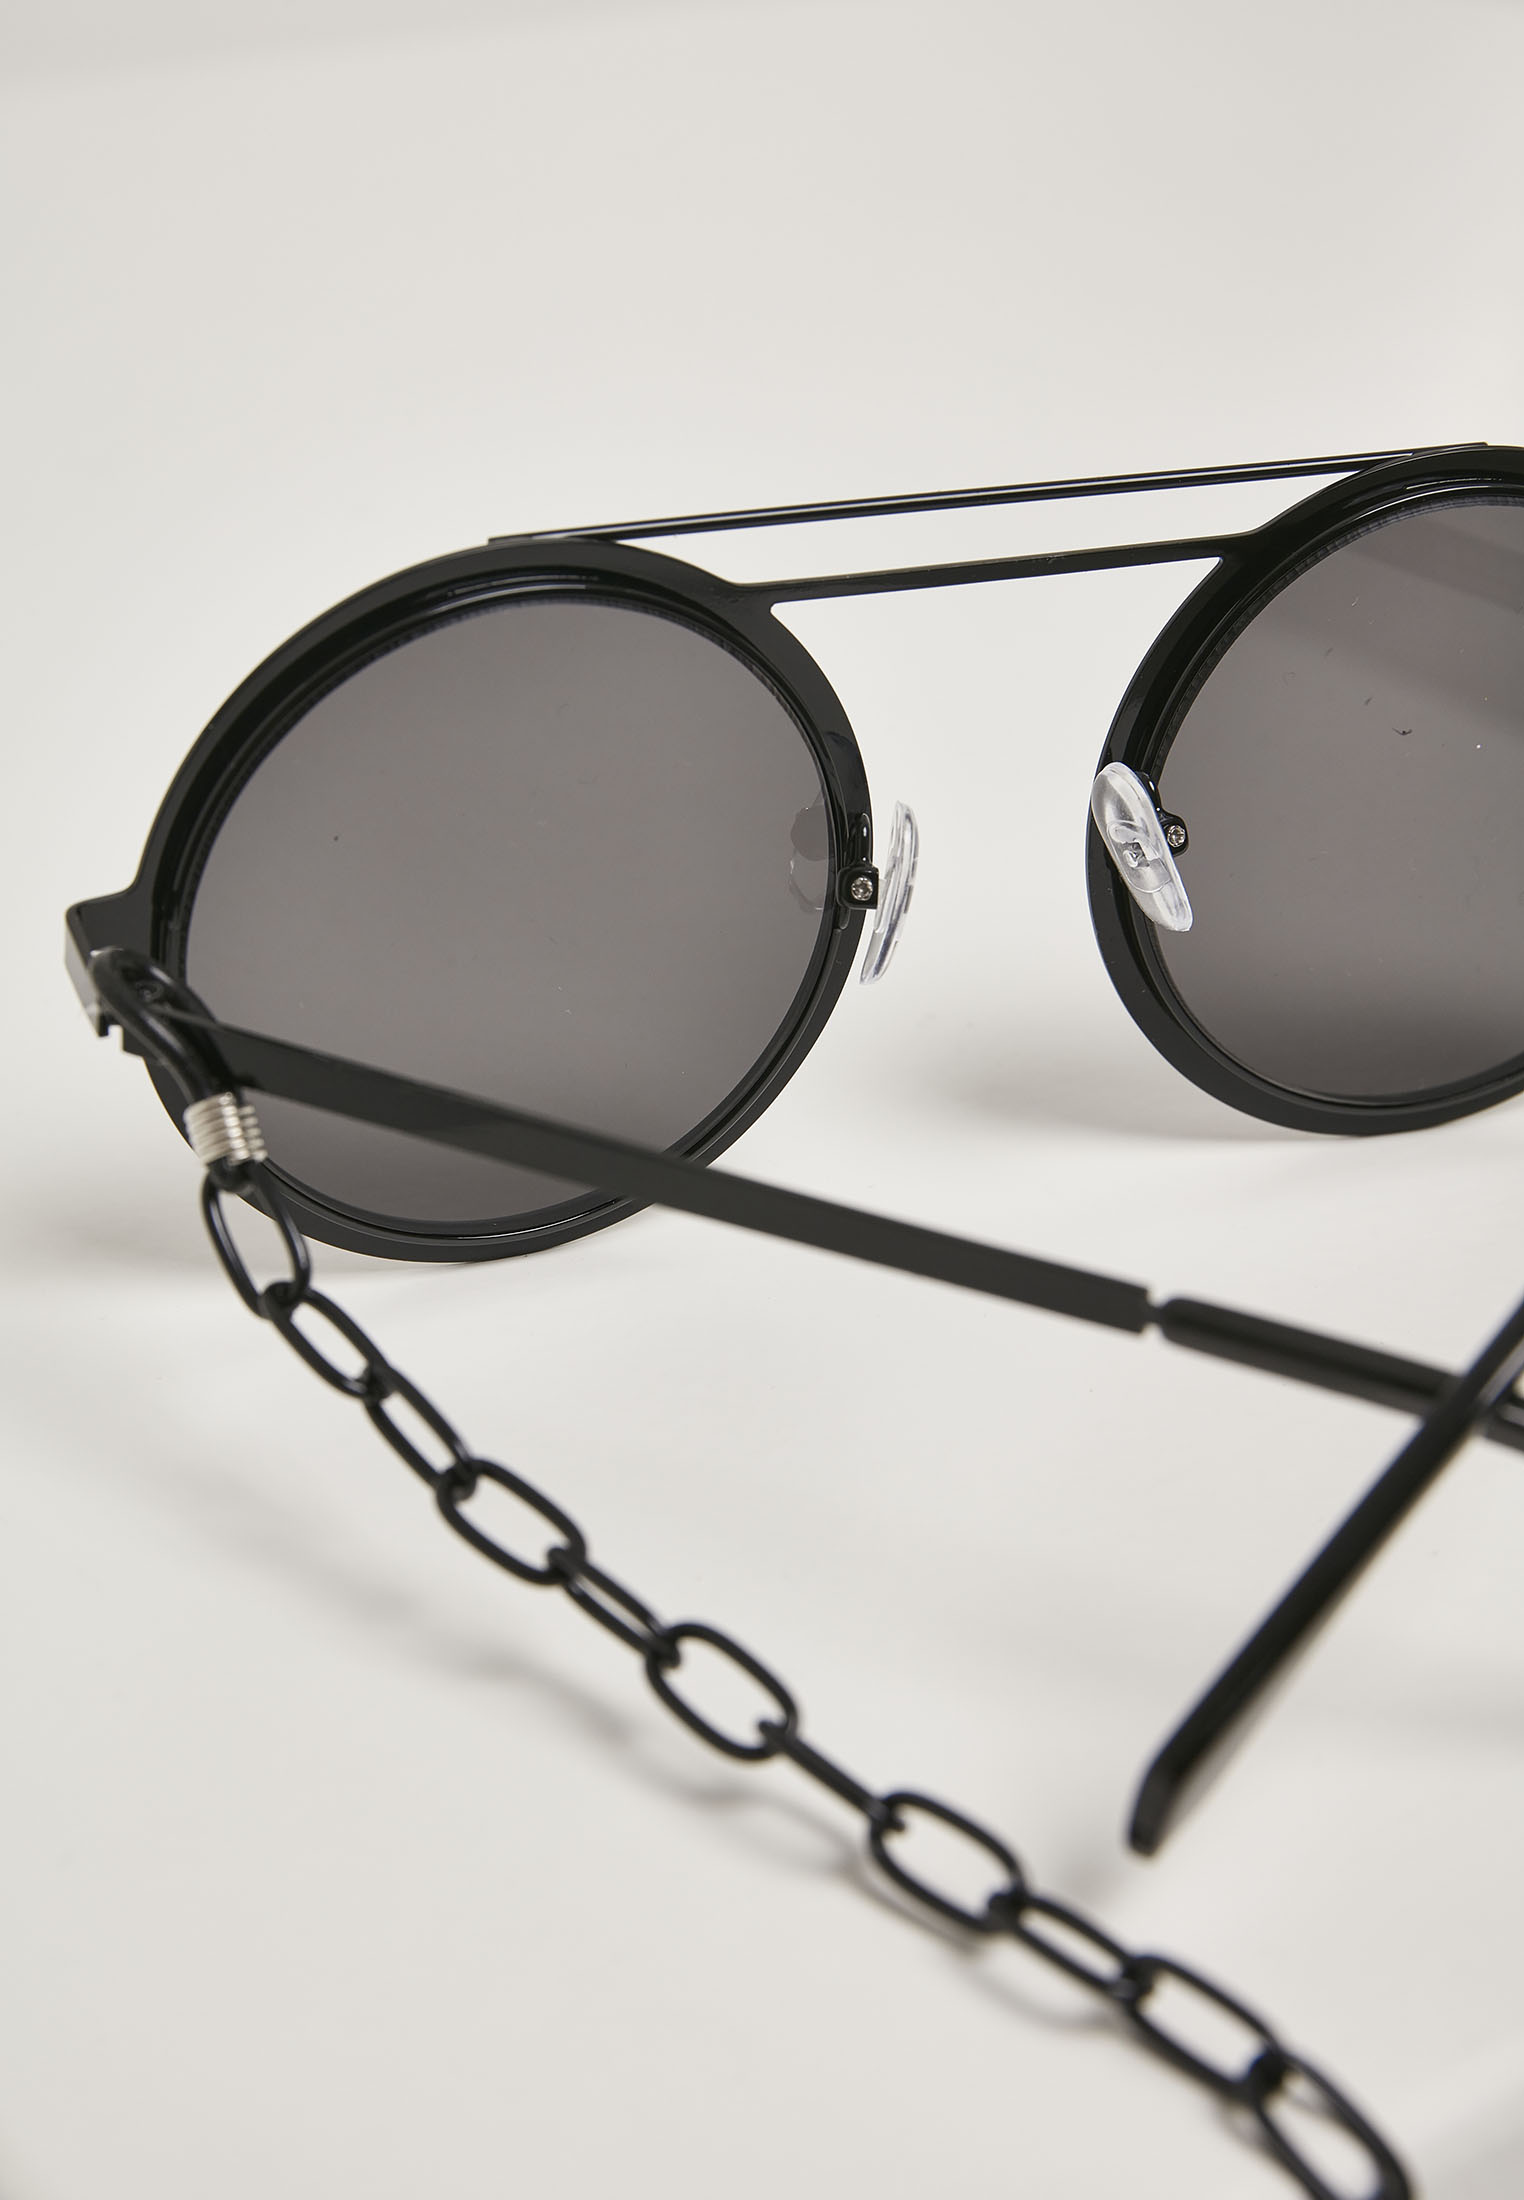 Sonnenbrillen 104 Chain Sunglasses in Farbe black/black